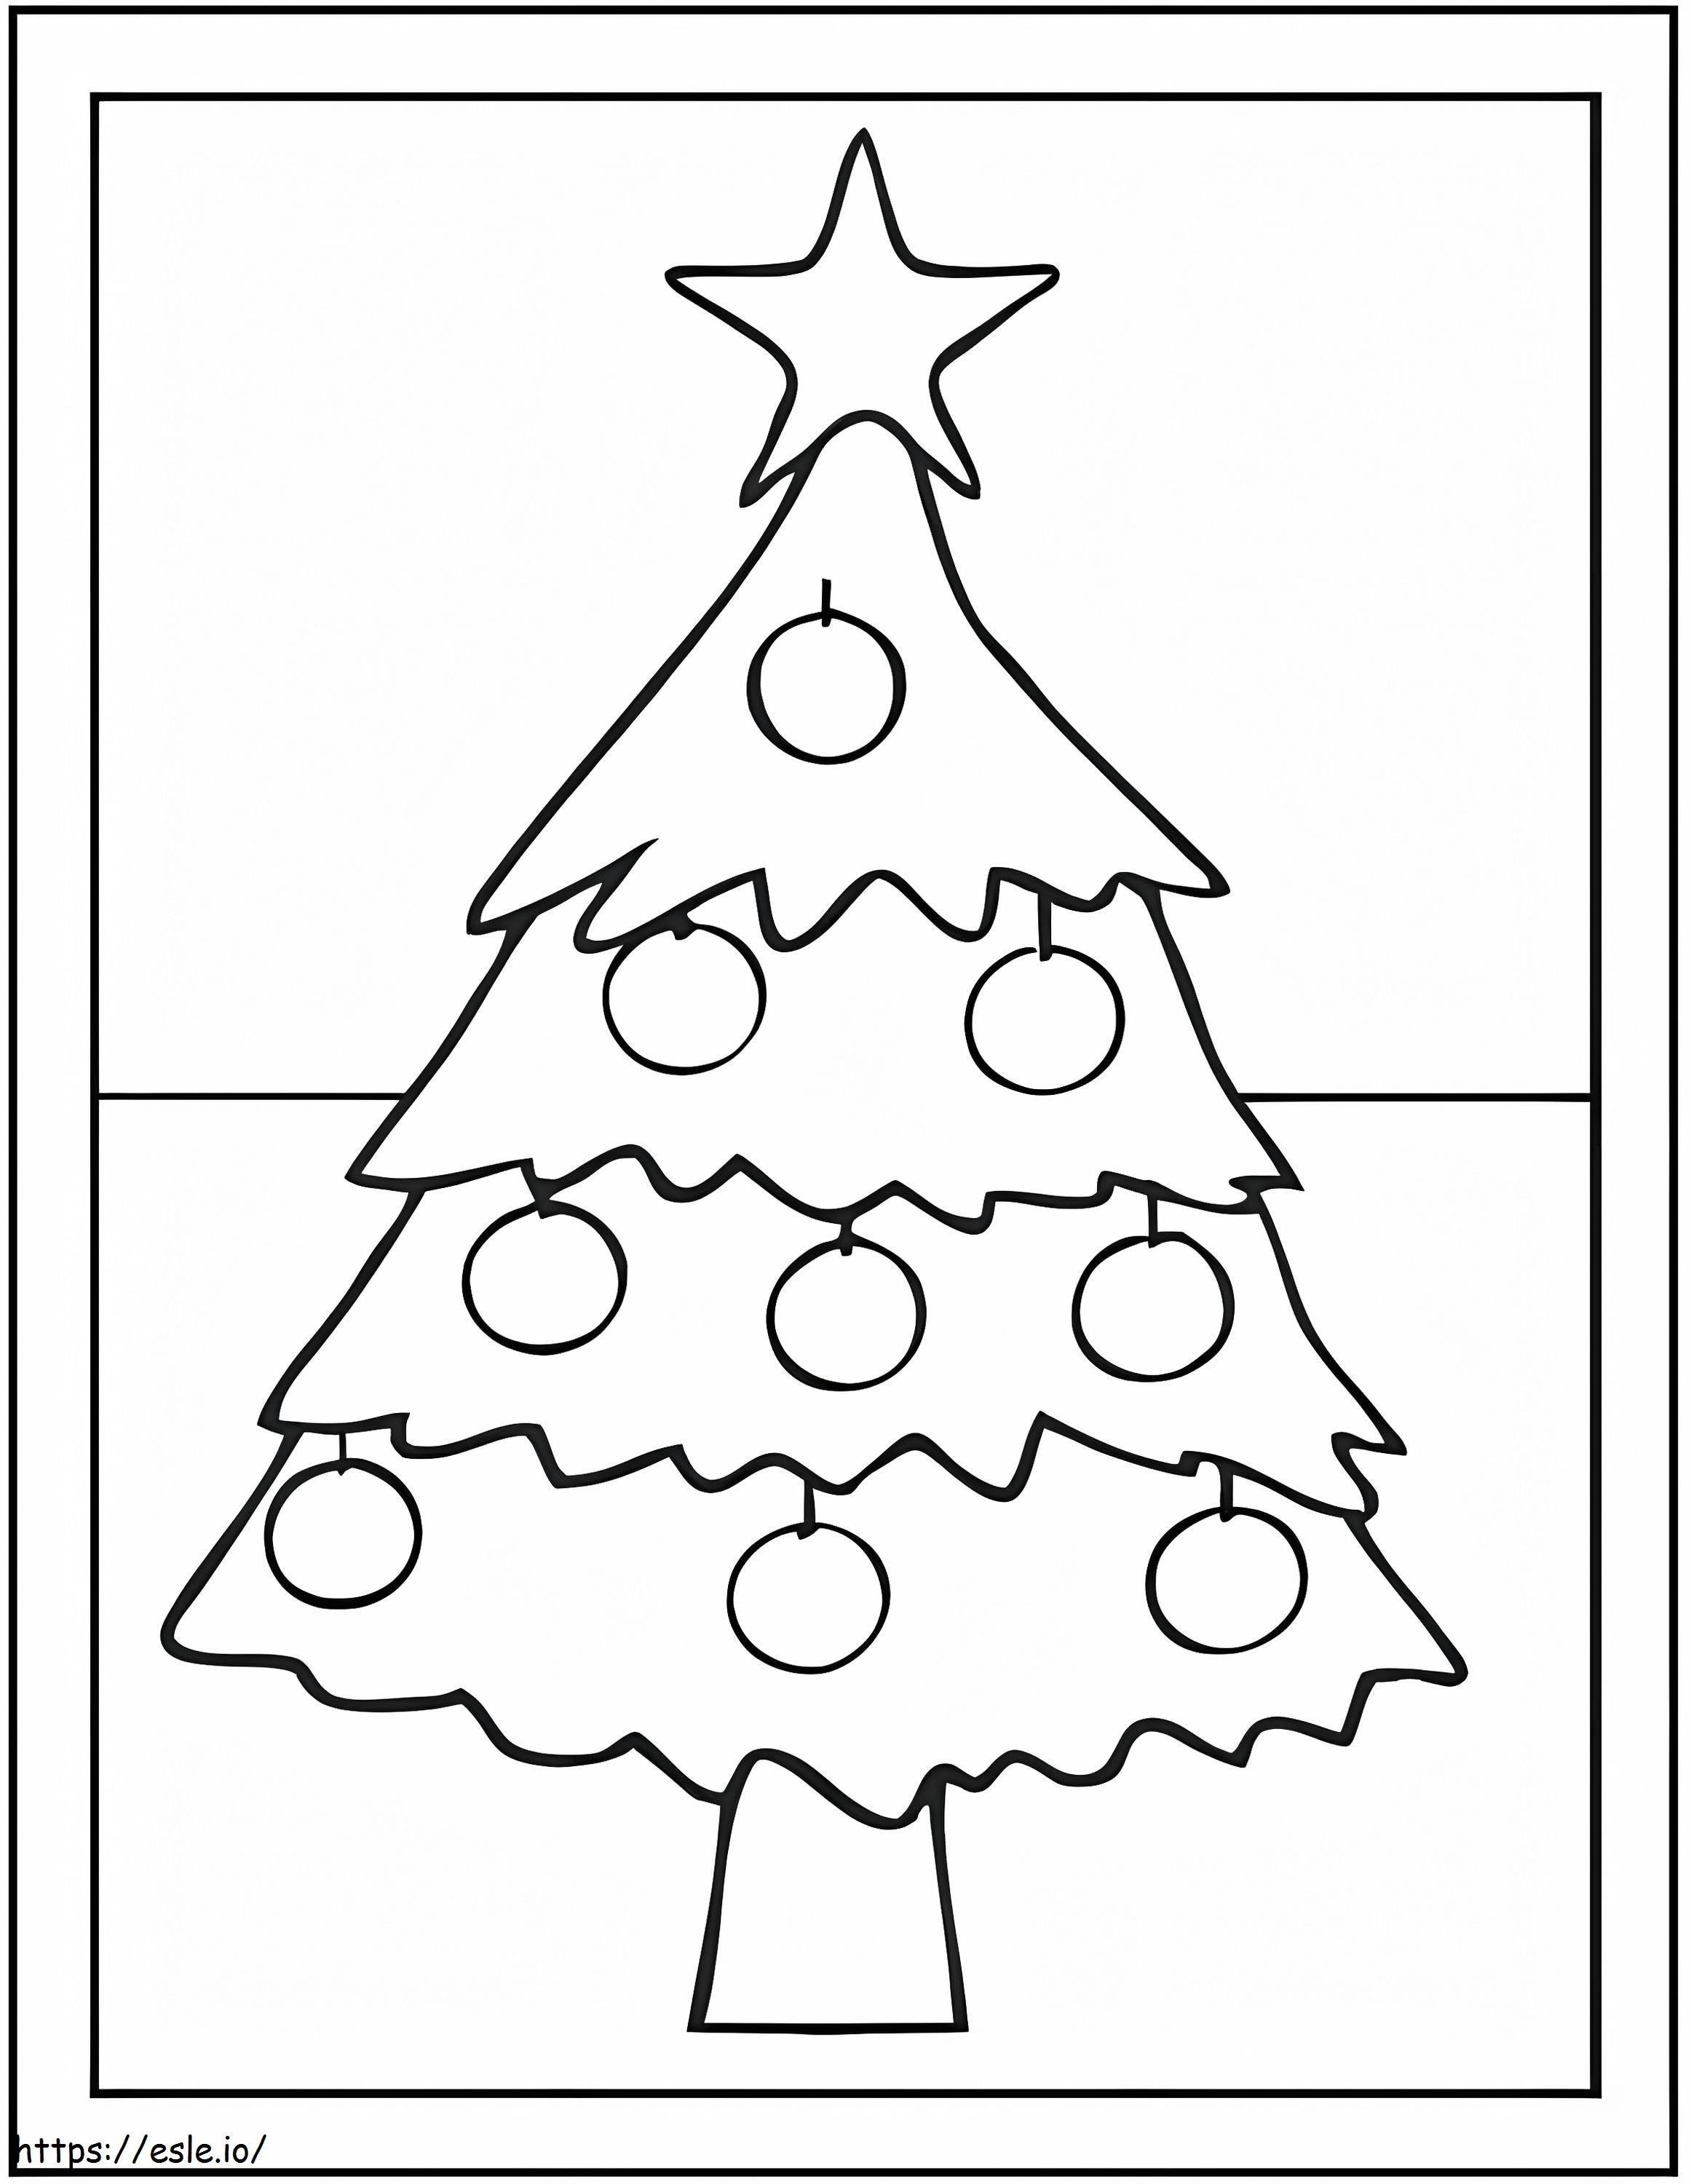 La estrella en el árbol de Navidad para colorear